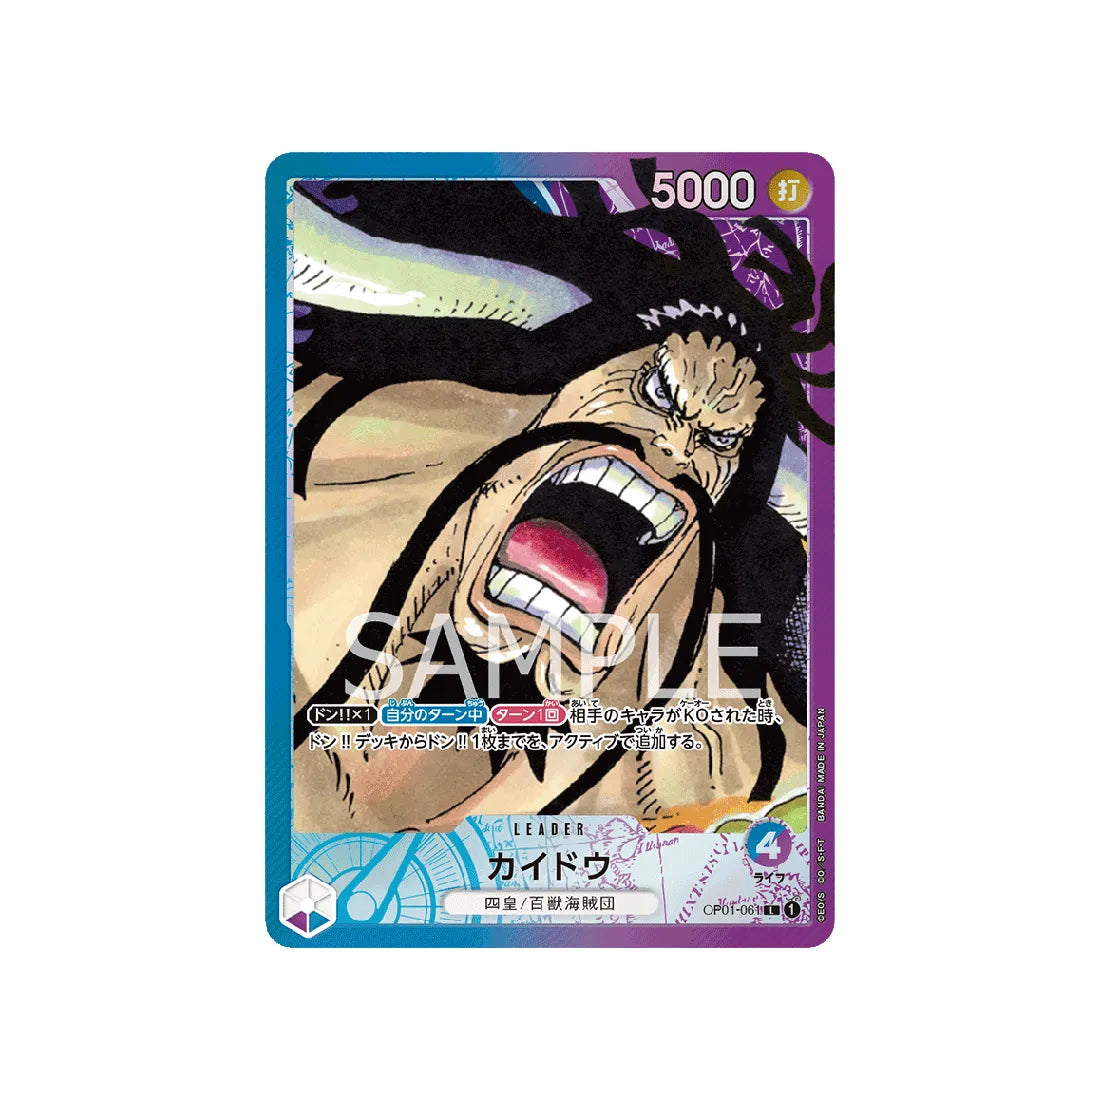 Carte One Piece Equipage Au Cent Bêtes ST04-003 : Kaido – Cartes Pokémon